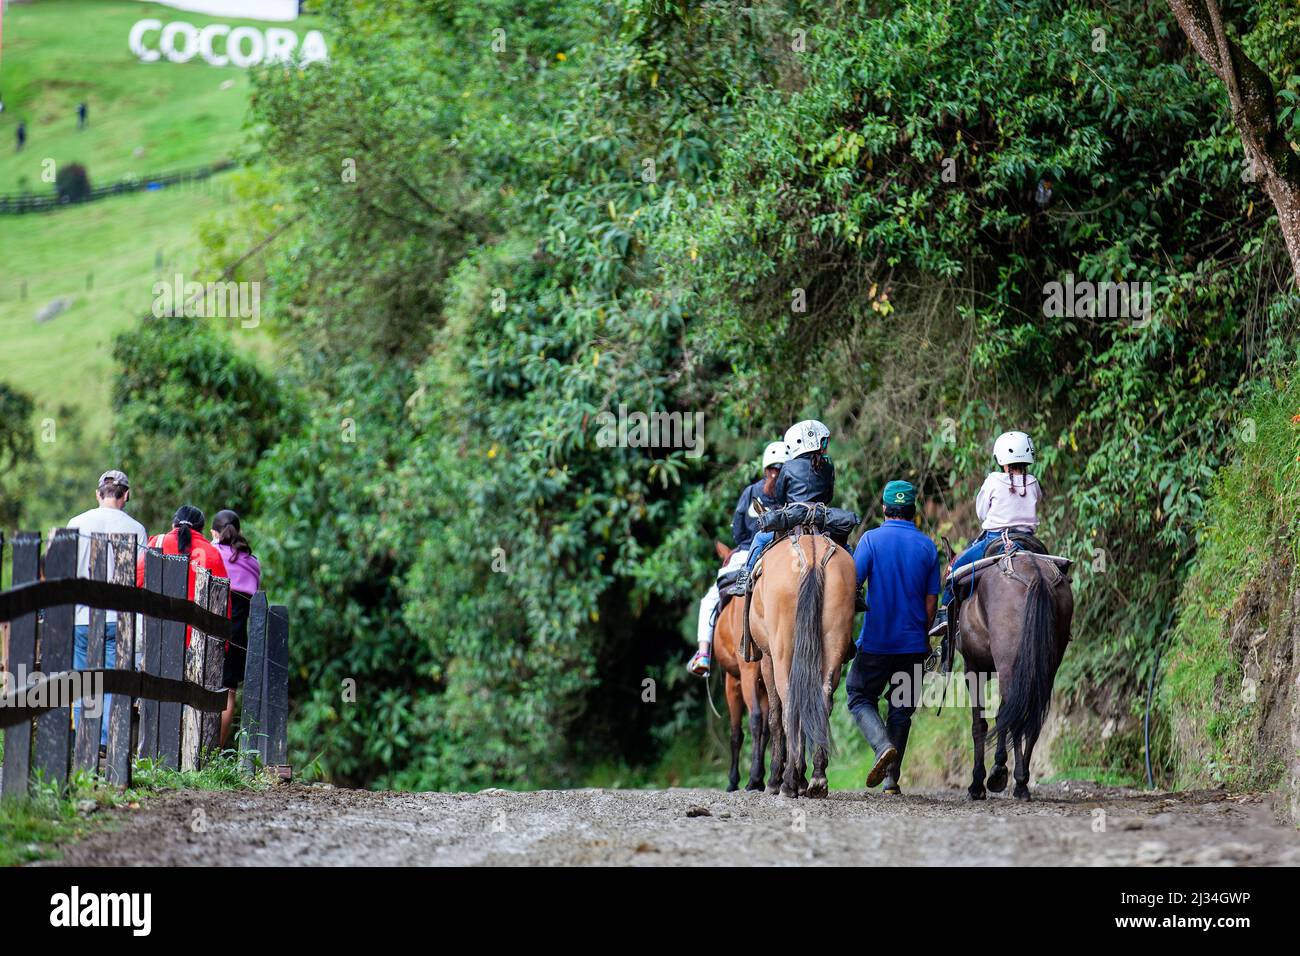 SALENTO, COLOMBIE - JUILLET 2021. Groupe de touristes sur une promenade à cheval dans la vallée de Cocora Banque D'Images